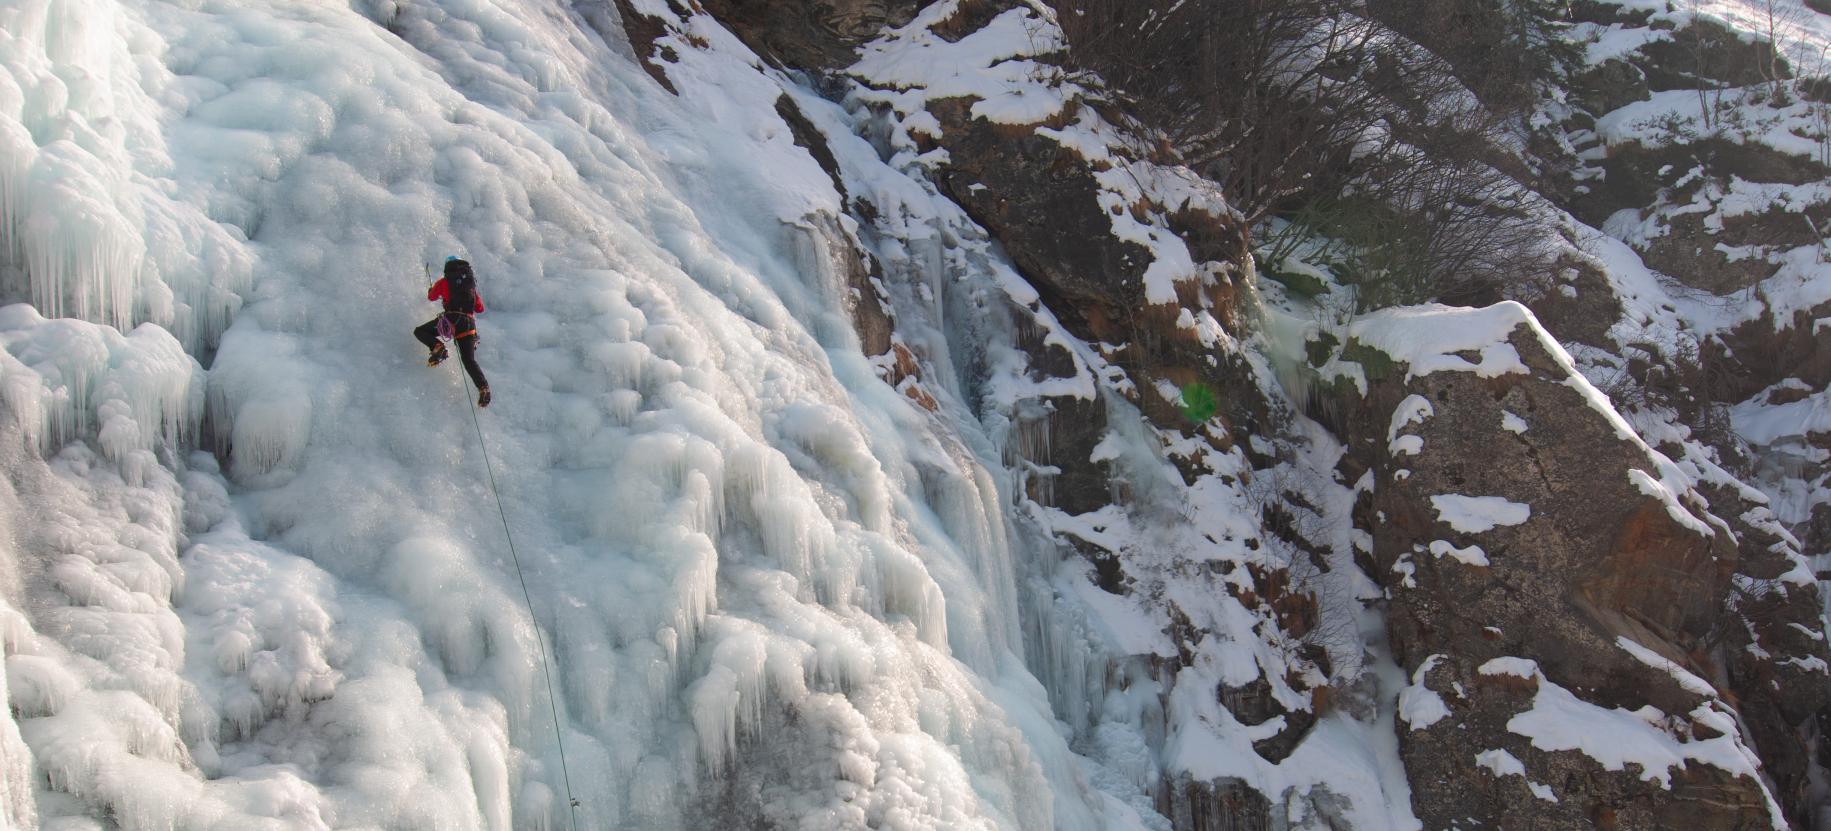 Cascate di ghiaccio nella Valle di Gressoney